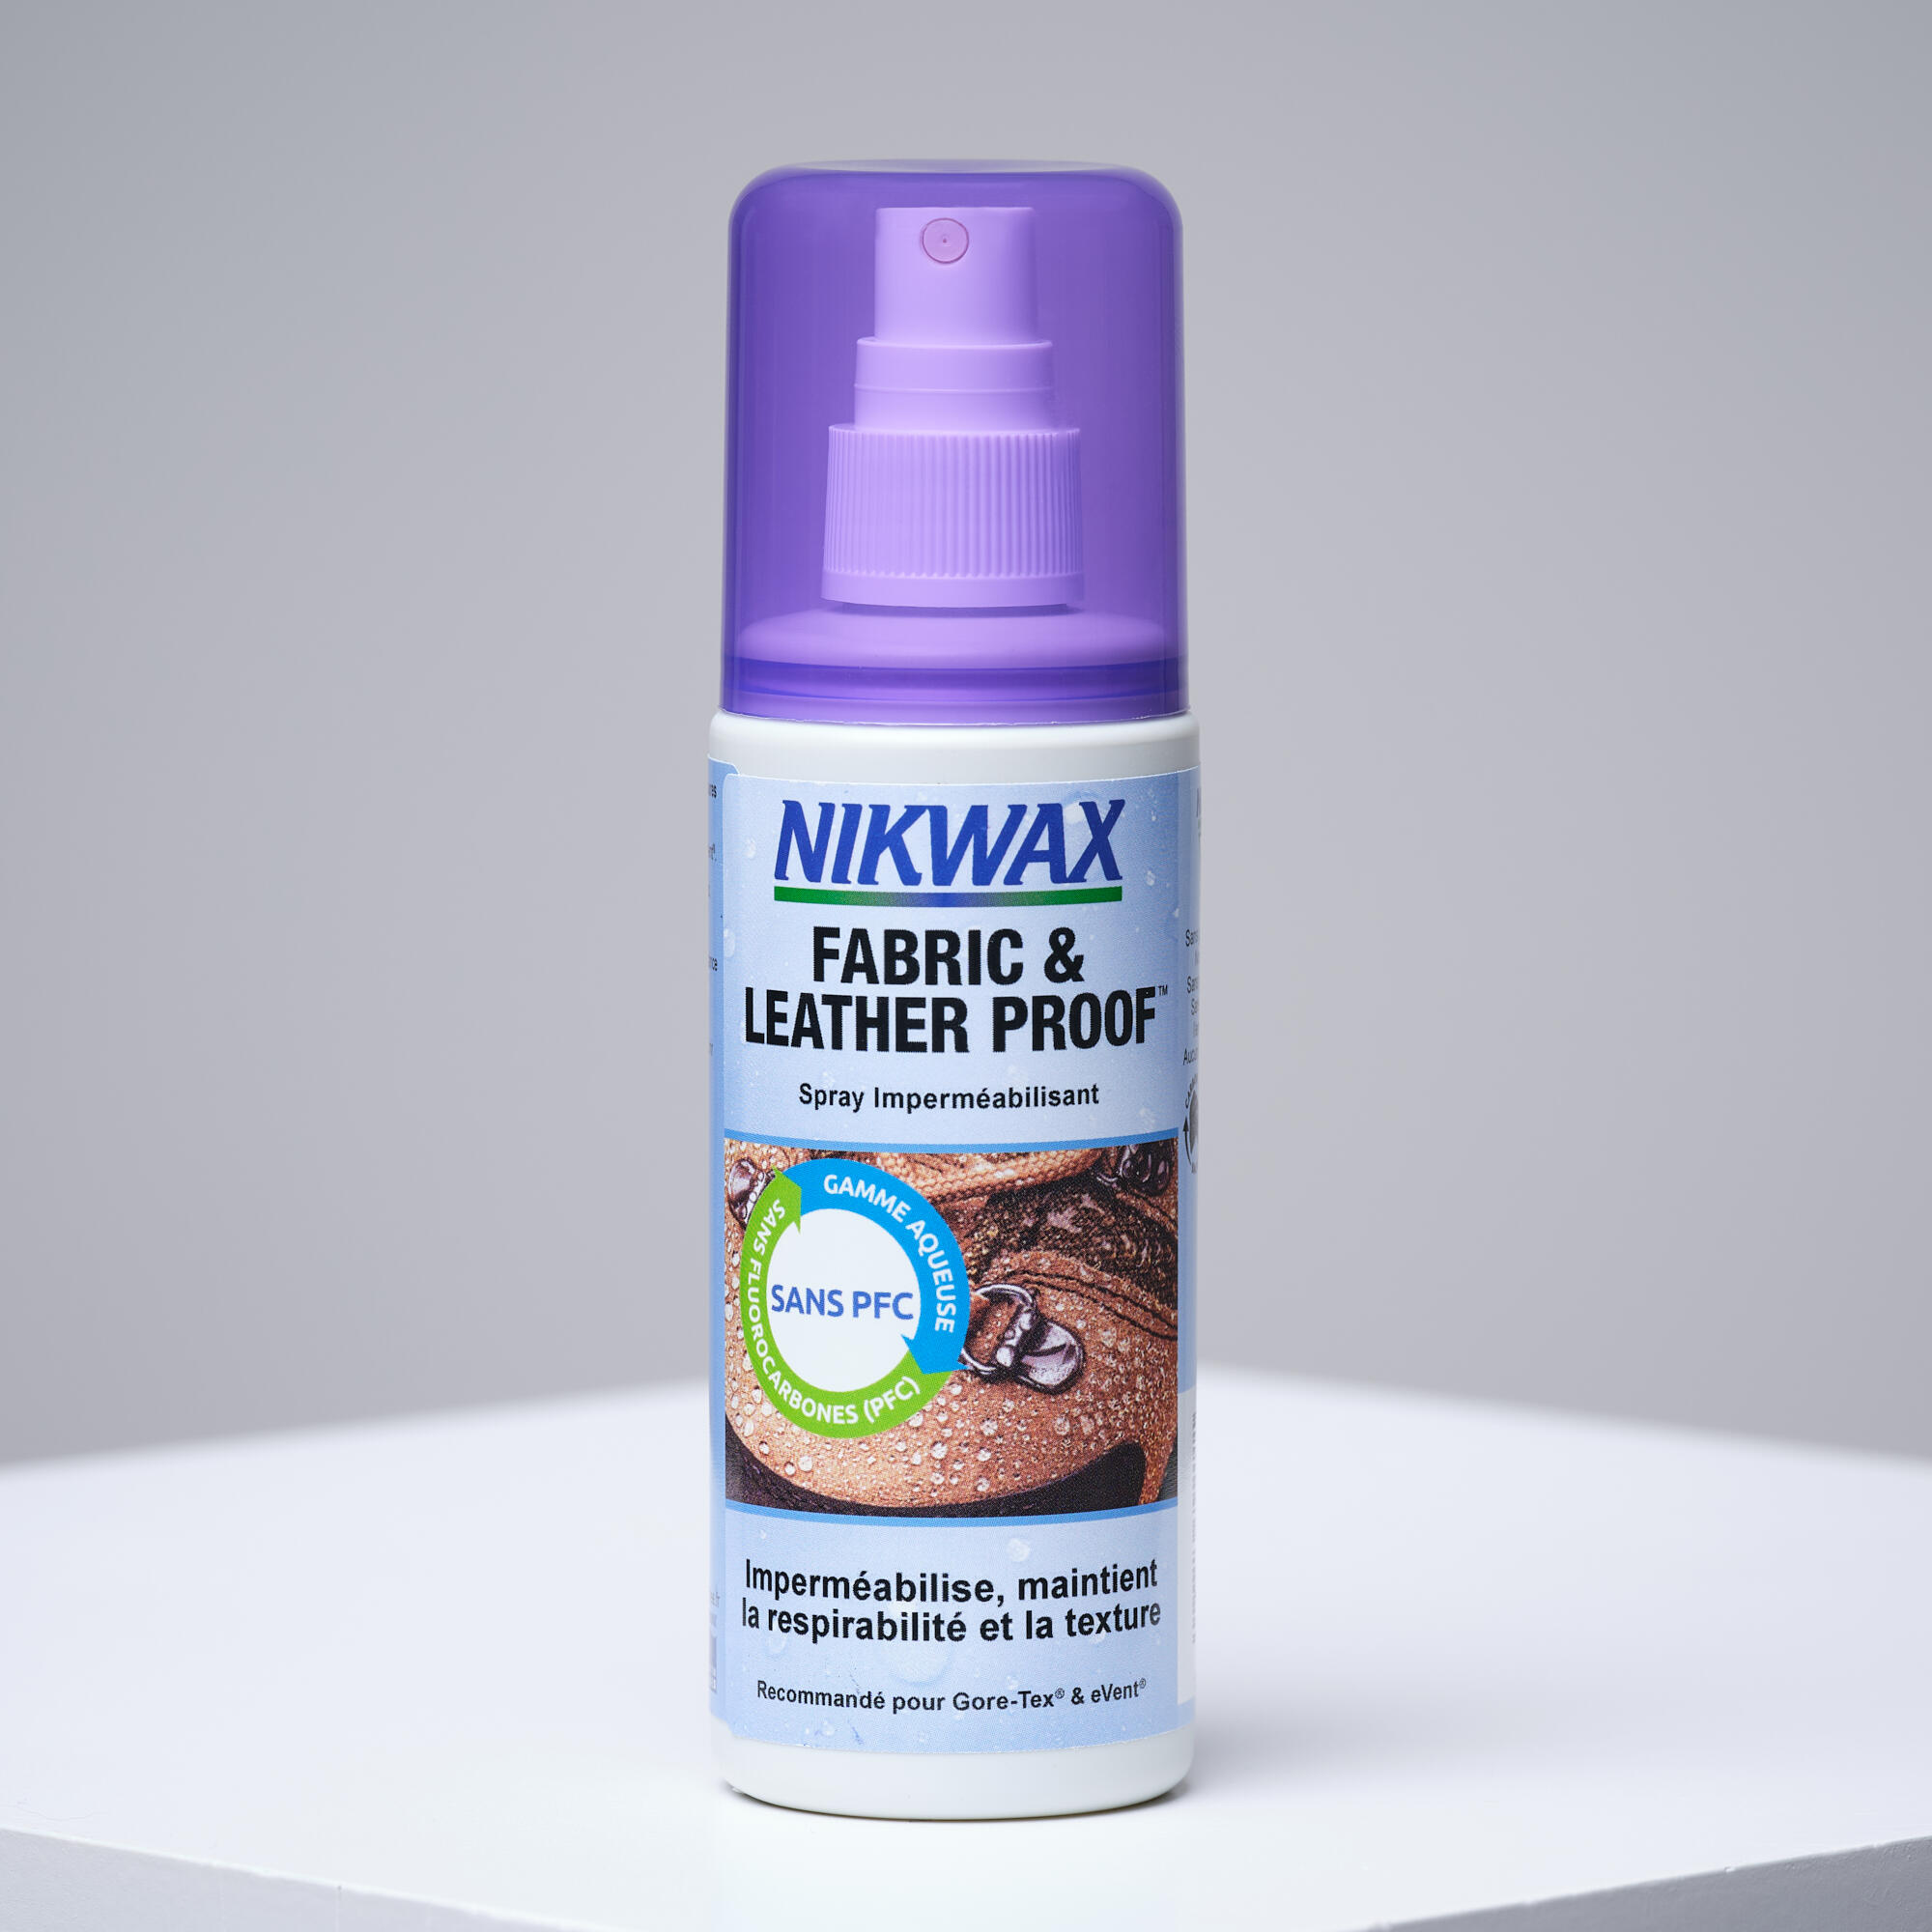 Spray de reimpermeabilizare tratament hidrofob pentru piele și textile Nikwax La Oferta Online decathlon imagine La Oferta Online